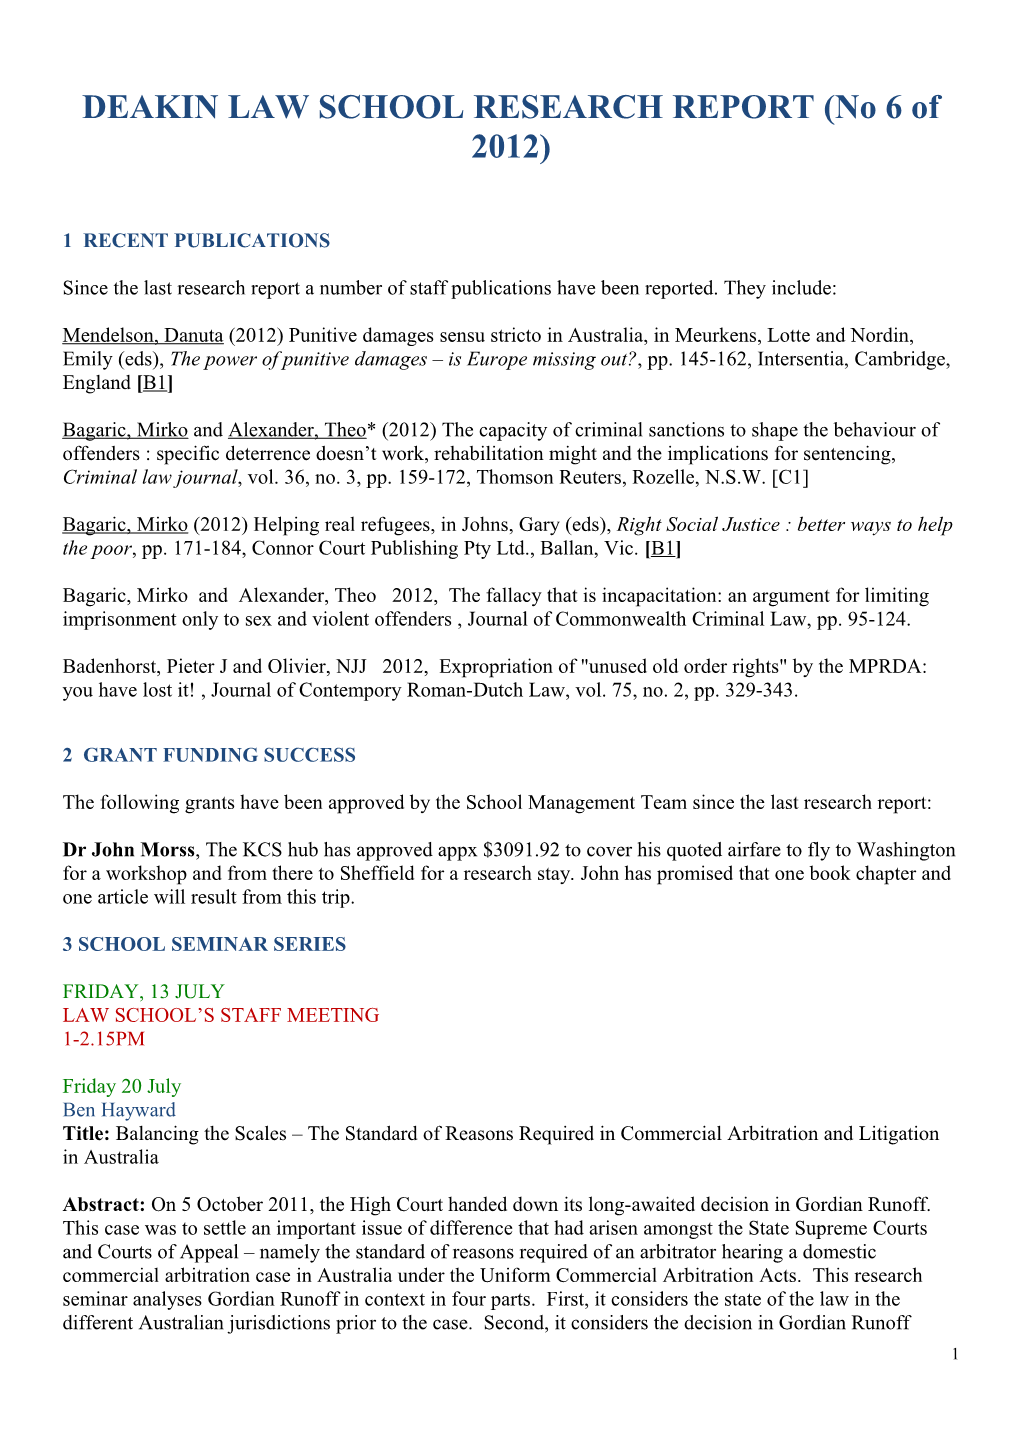 DEAKIN LAW SCHOOL RESEARCH REPORT (No 6 of 2012)